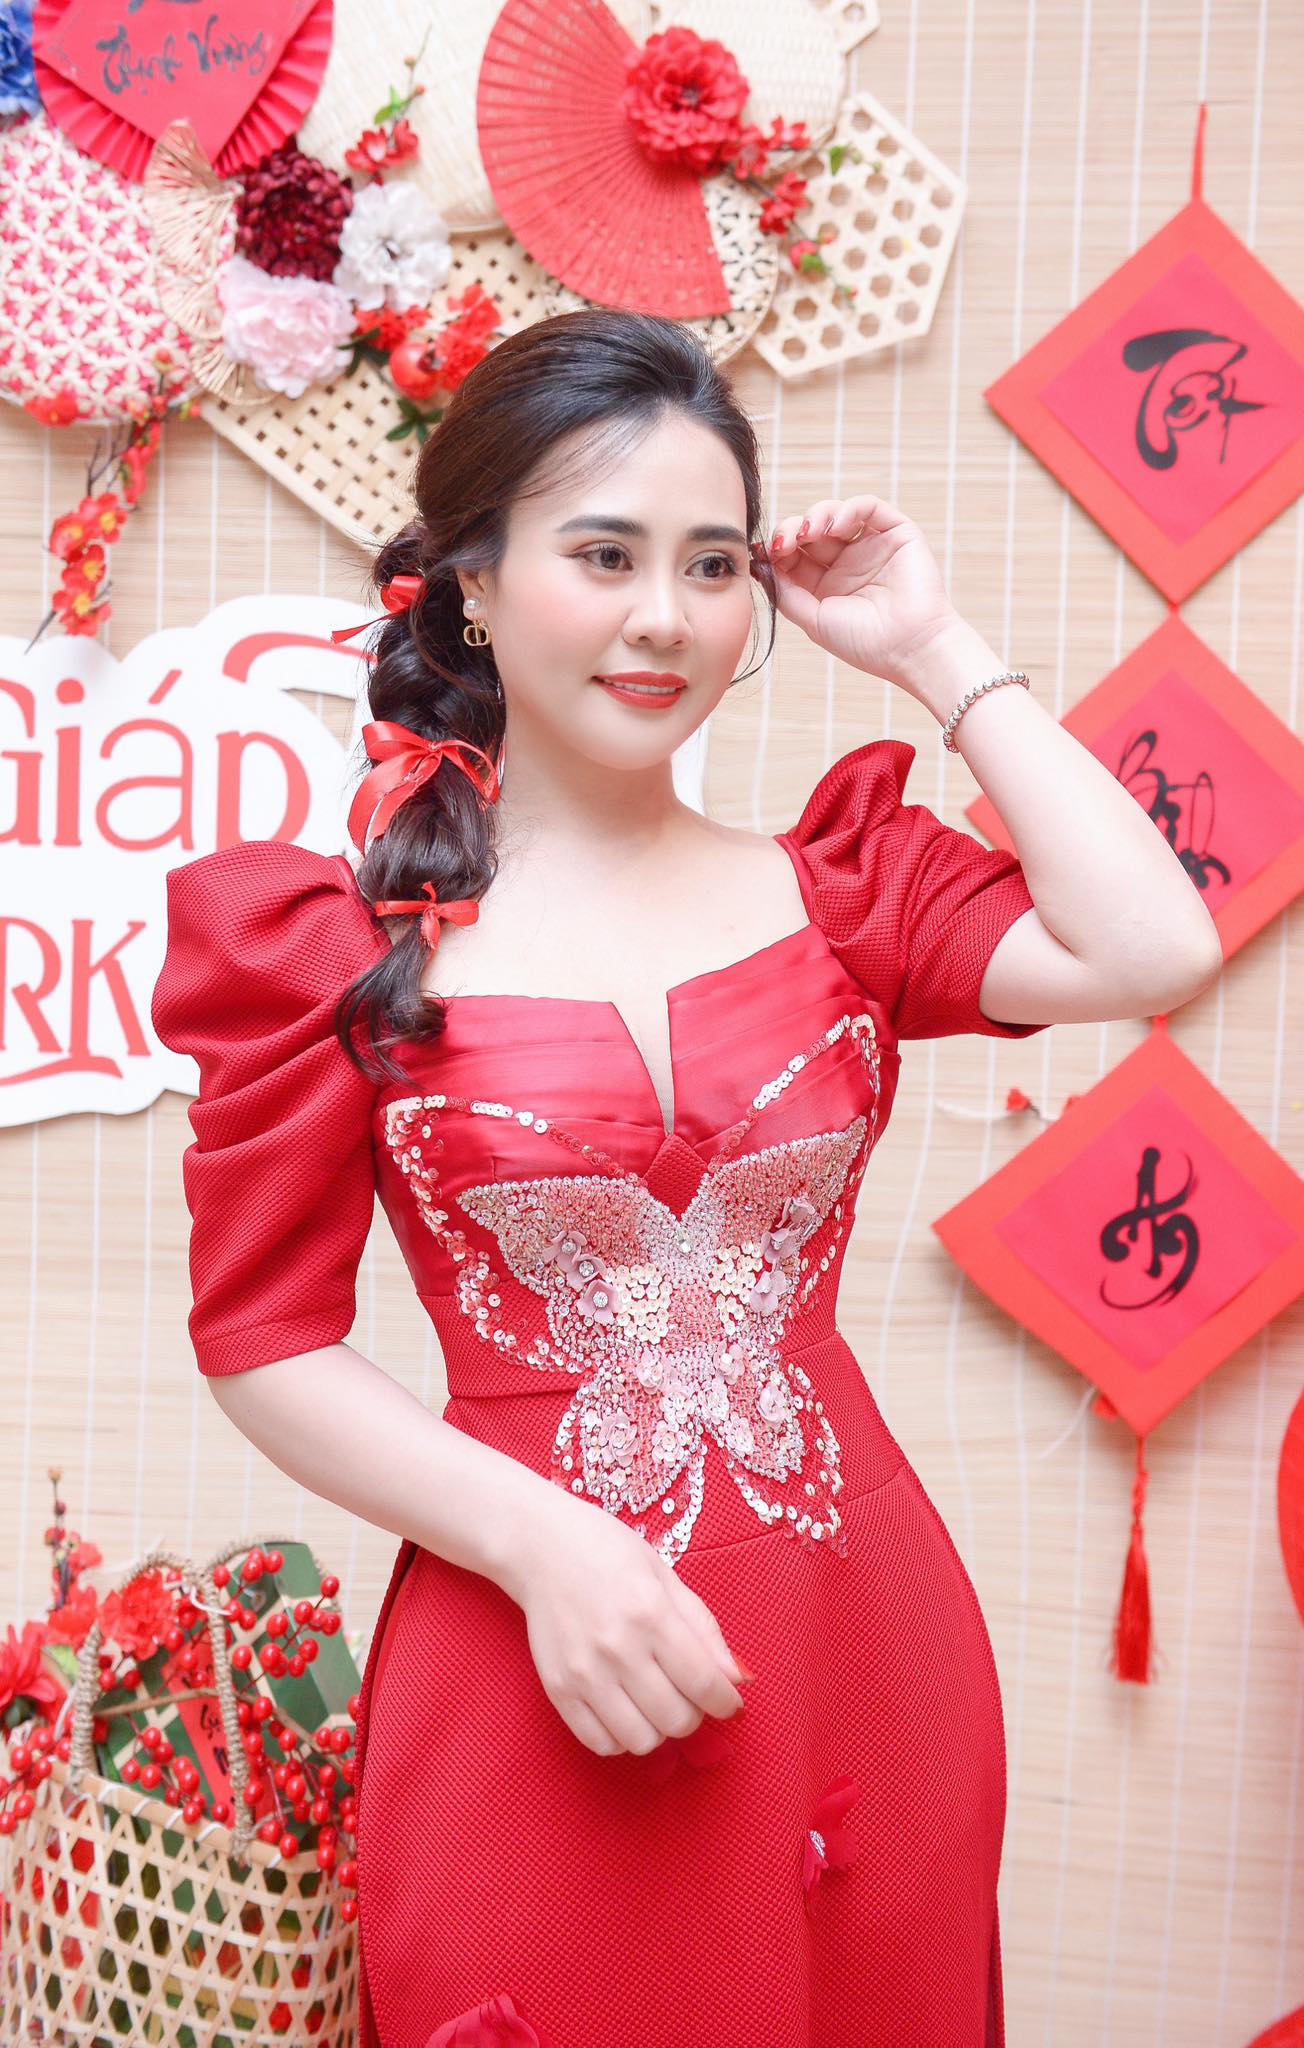 Hoa hậu Phan Kim Oanh khoe sắc vóc với áo dài đỏ, chấm thi gói bánh chưng- Ảnh 3.